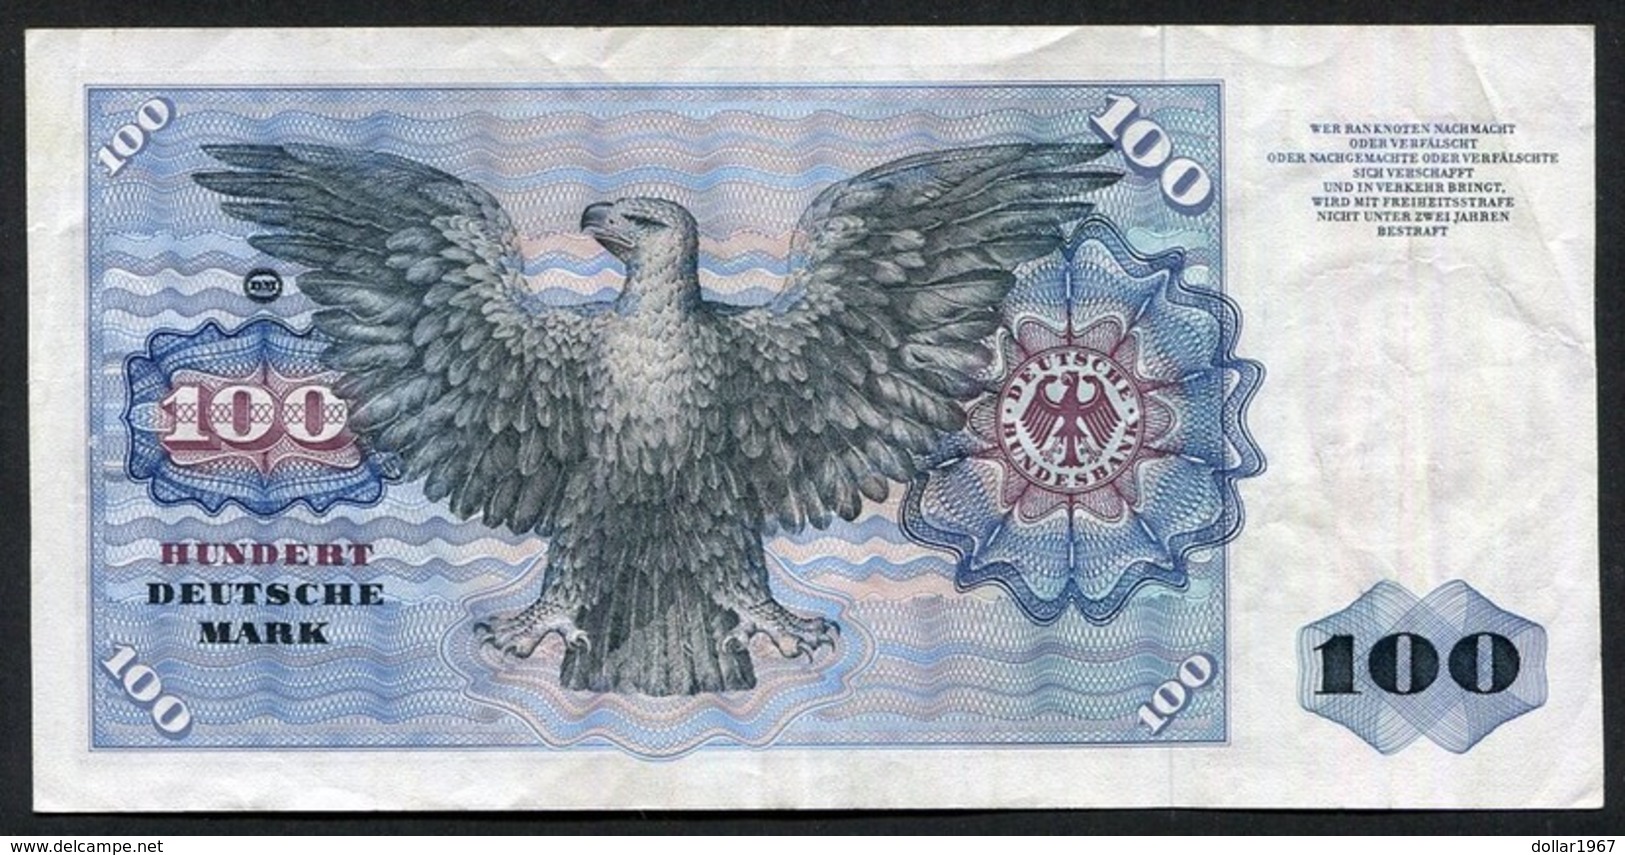 100 Deutsche Mark 2-1-1970 / Bundesbanknote NE - See The 2 Scans For Condition.(Originalscan ) - 100 Deutsche Mark